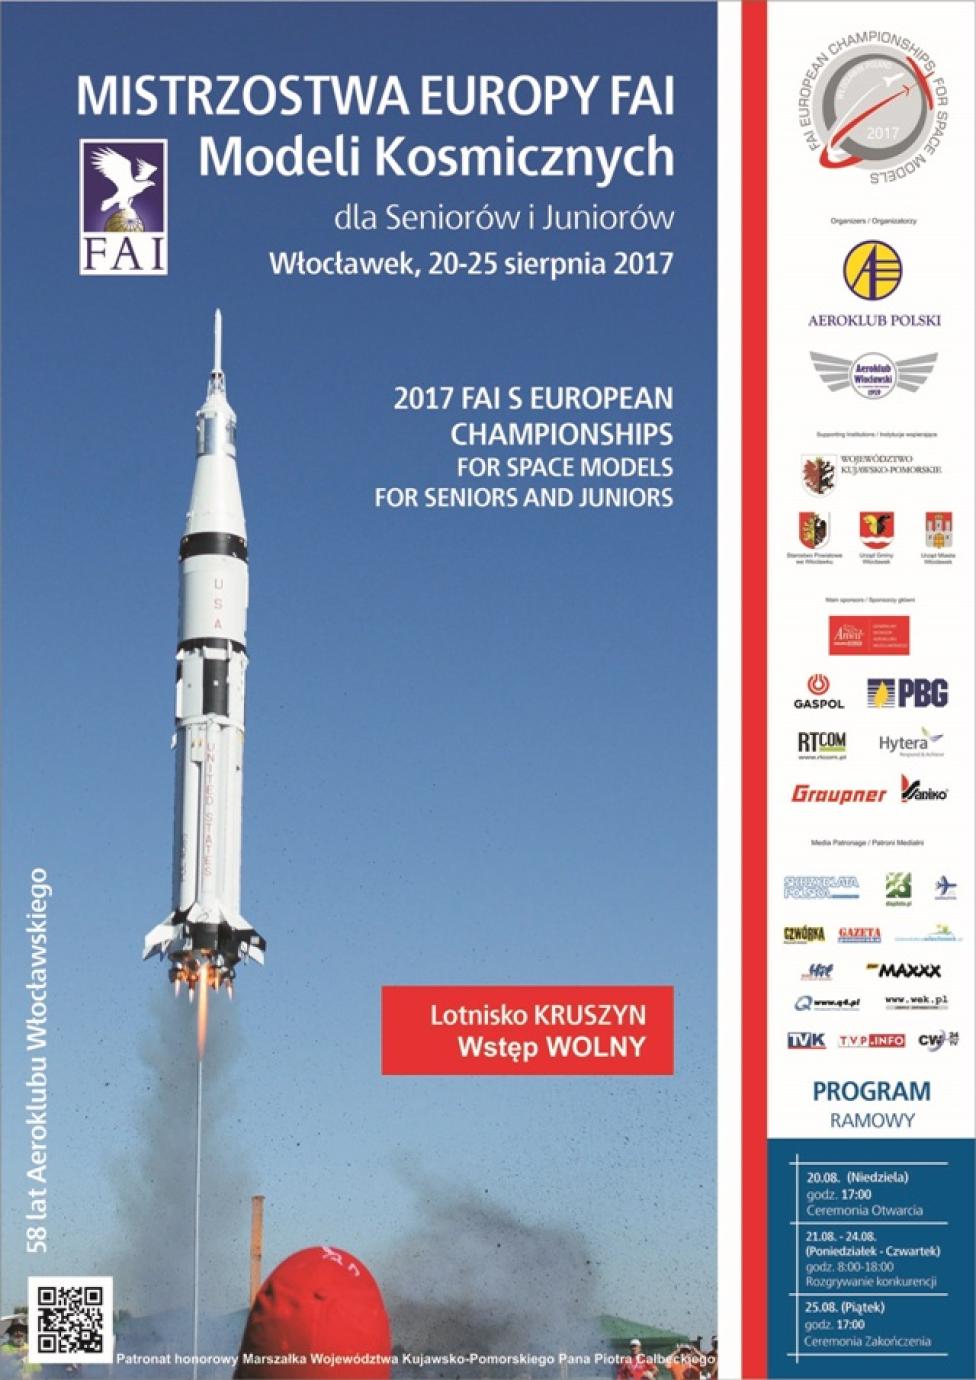 Mistrzostwa Europy FAI Modeli Kosmicznych 2017 we Włocławku